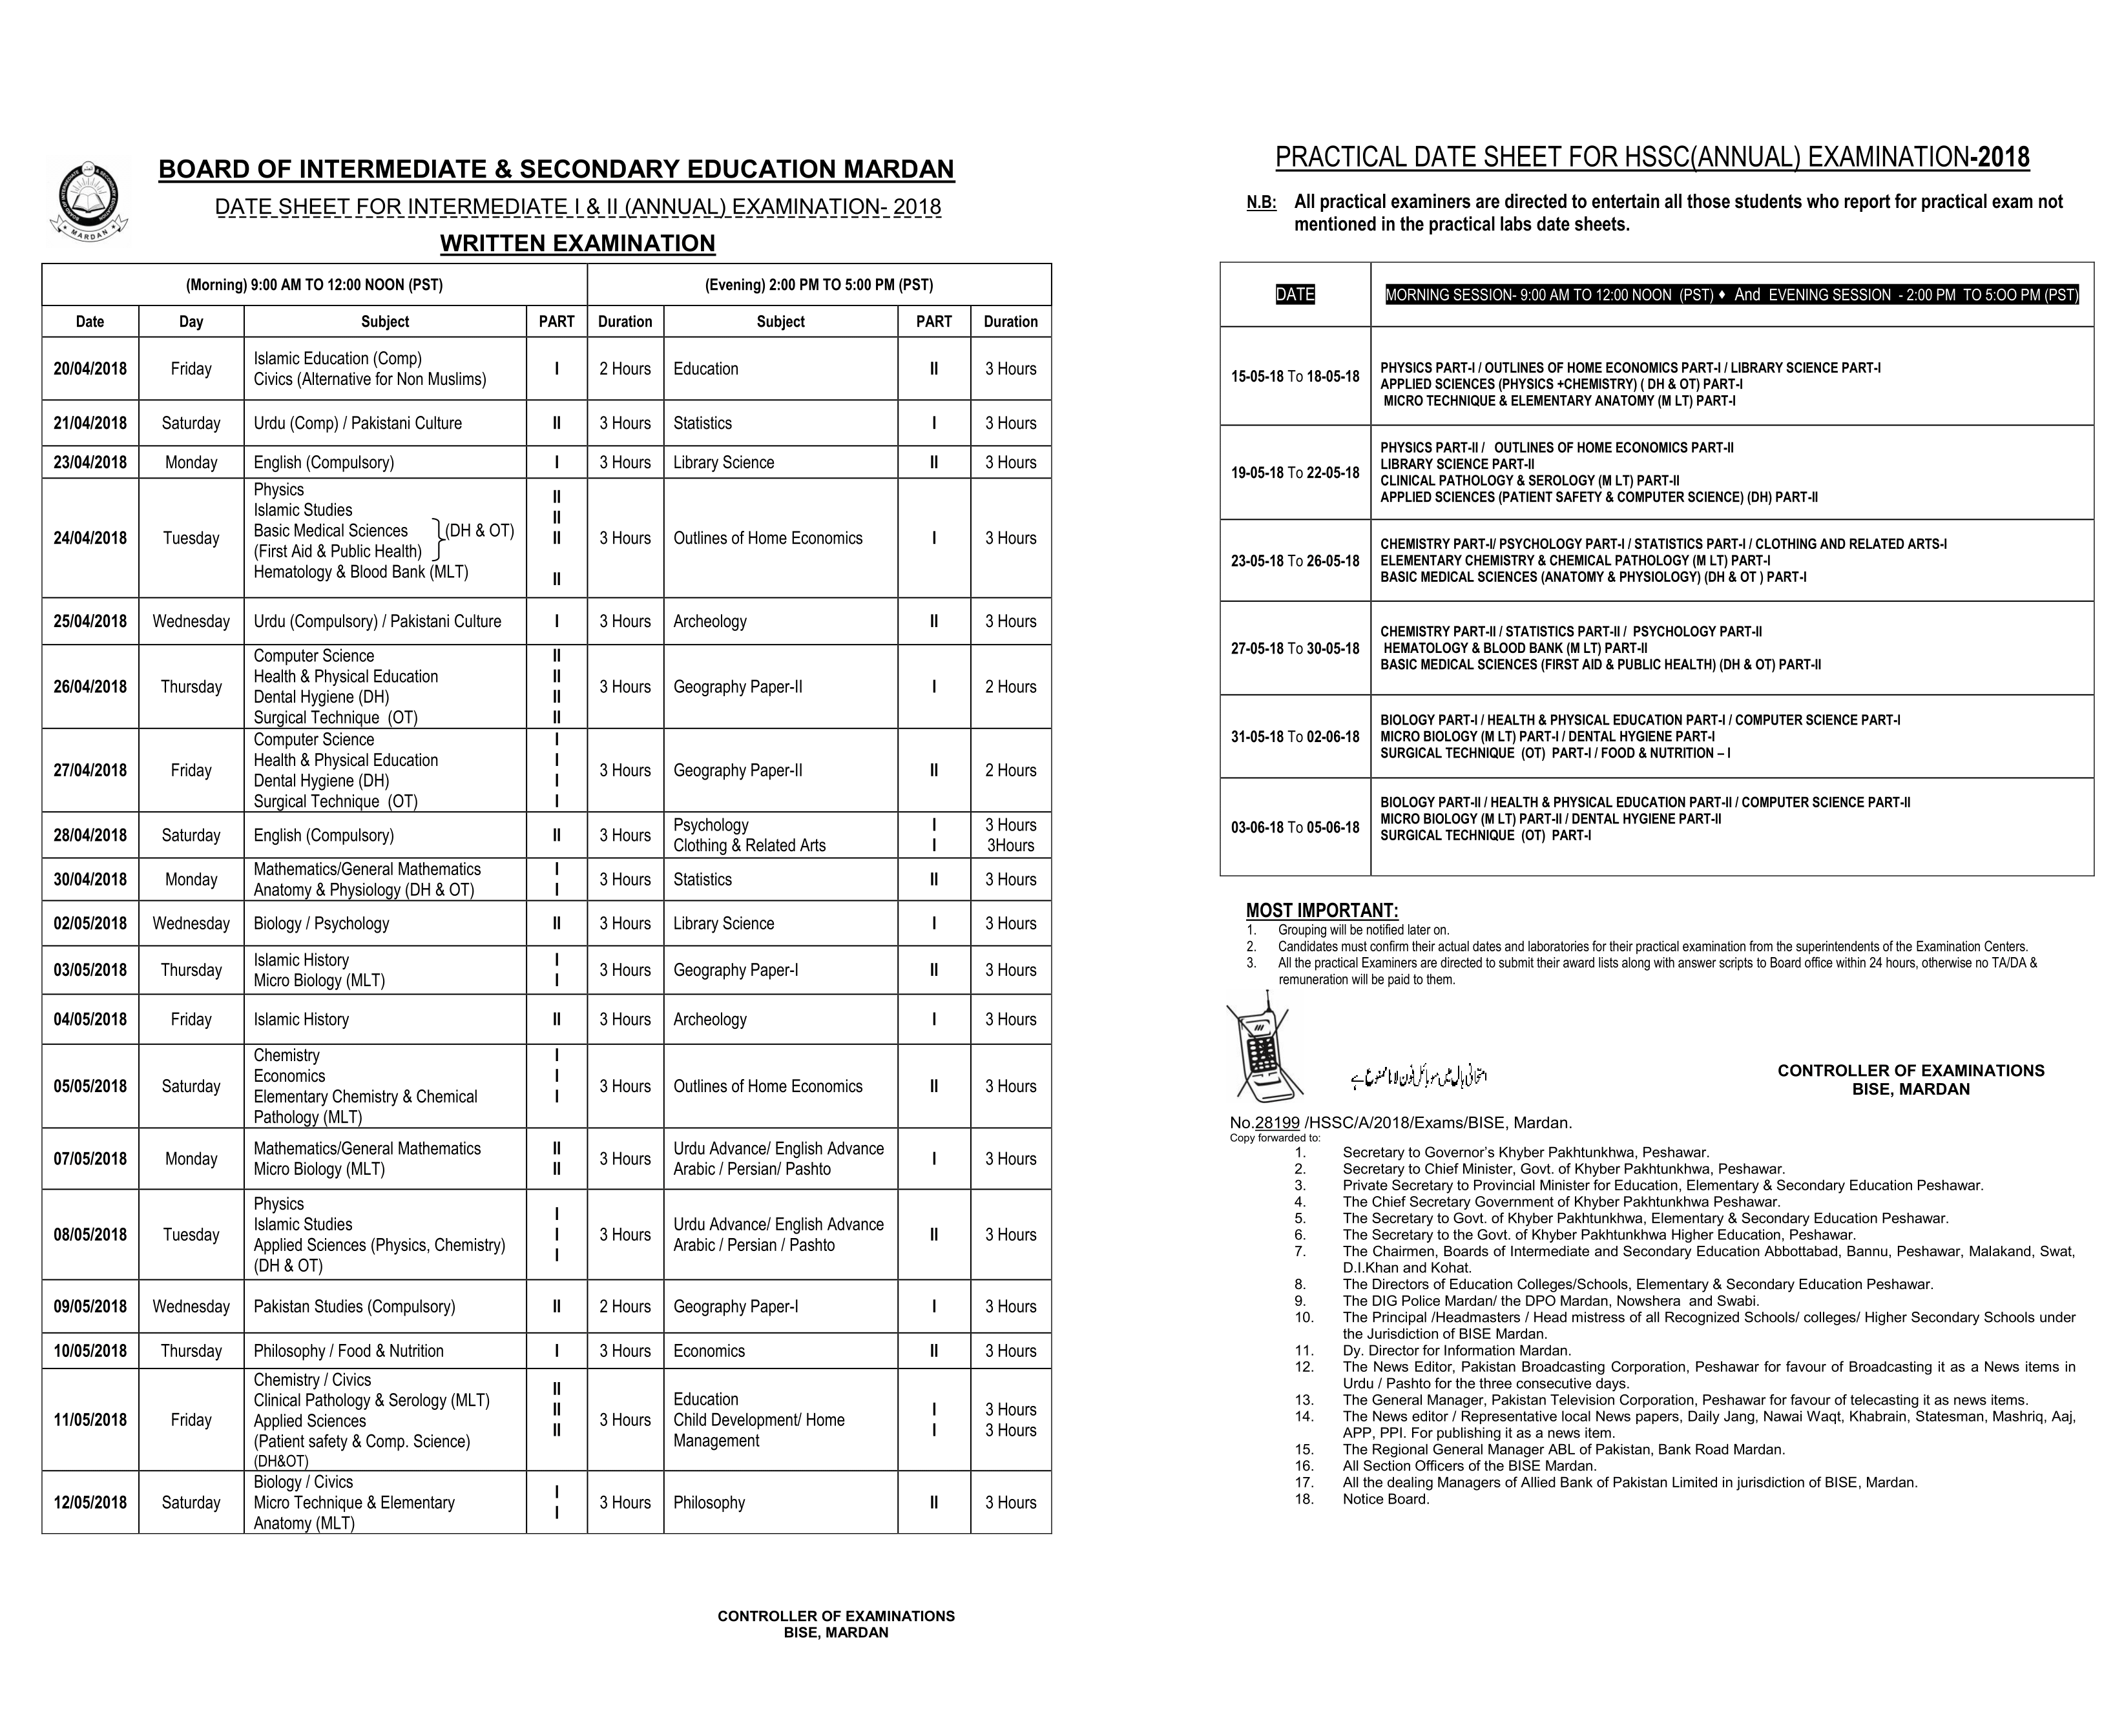 Date Sheet for Board of Intermediate & Secondary Education Mardan HSSC Part I & II